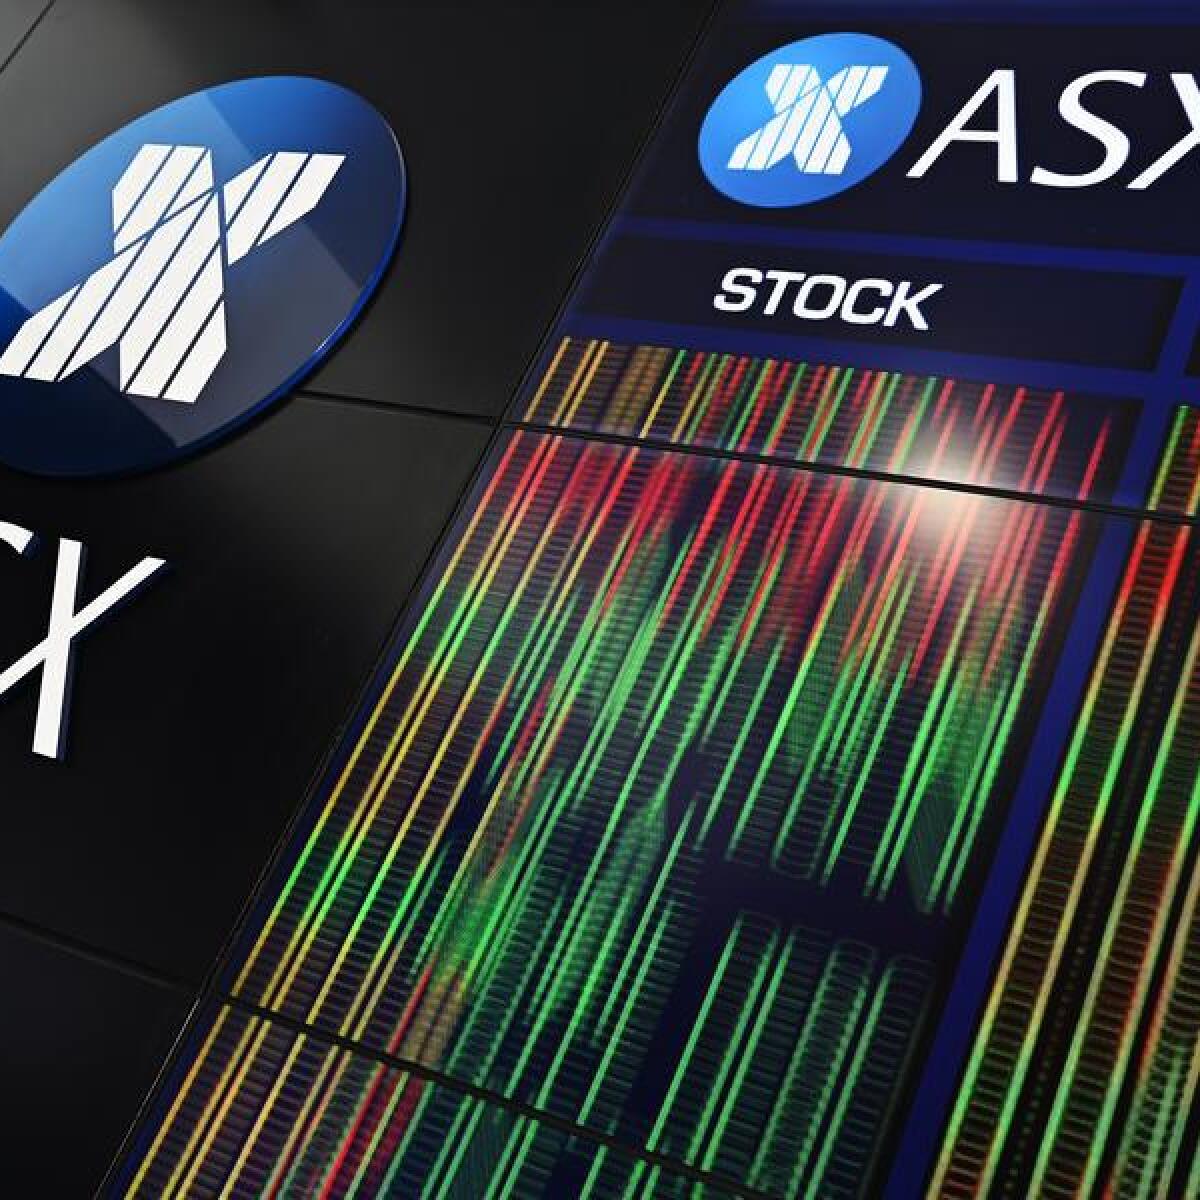 The Australian Securities Exchange